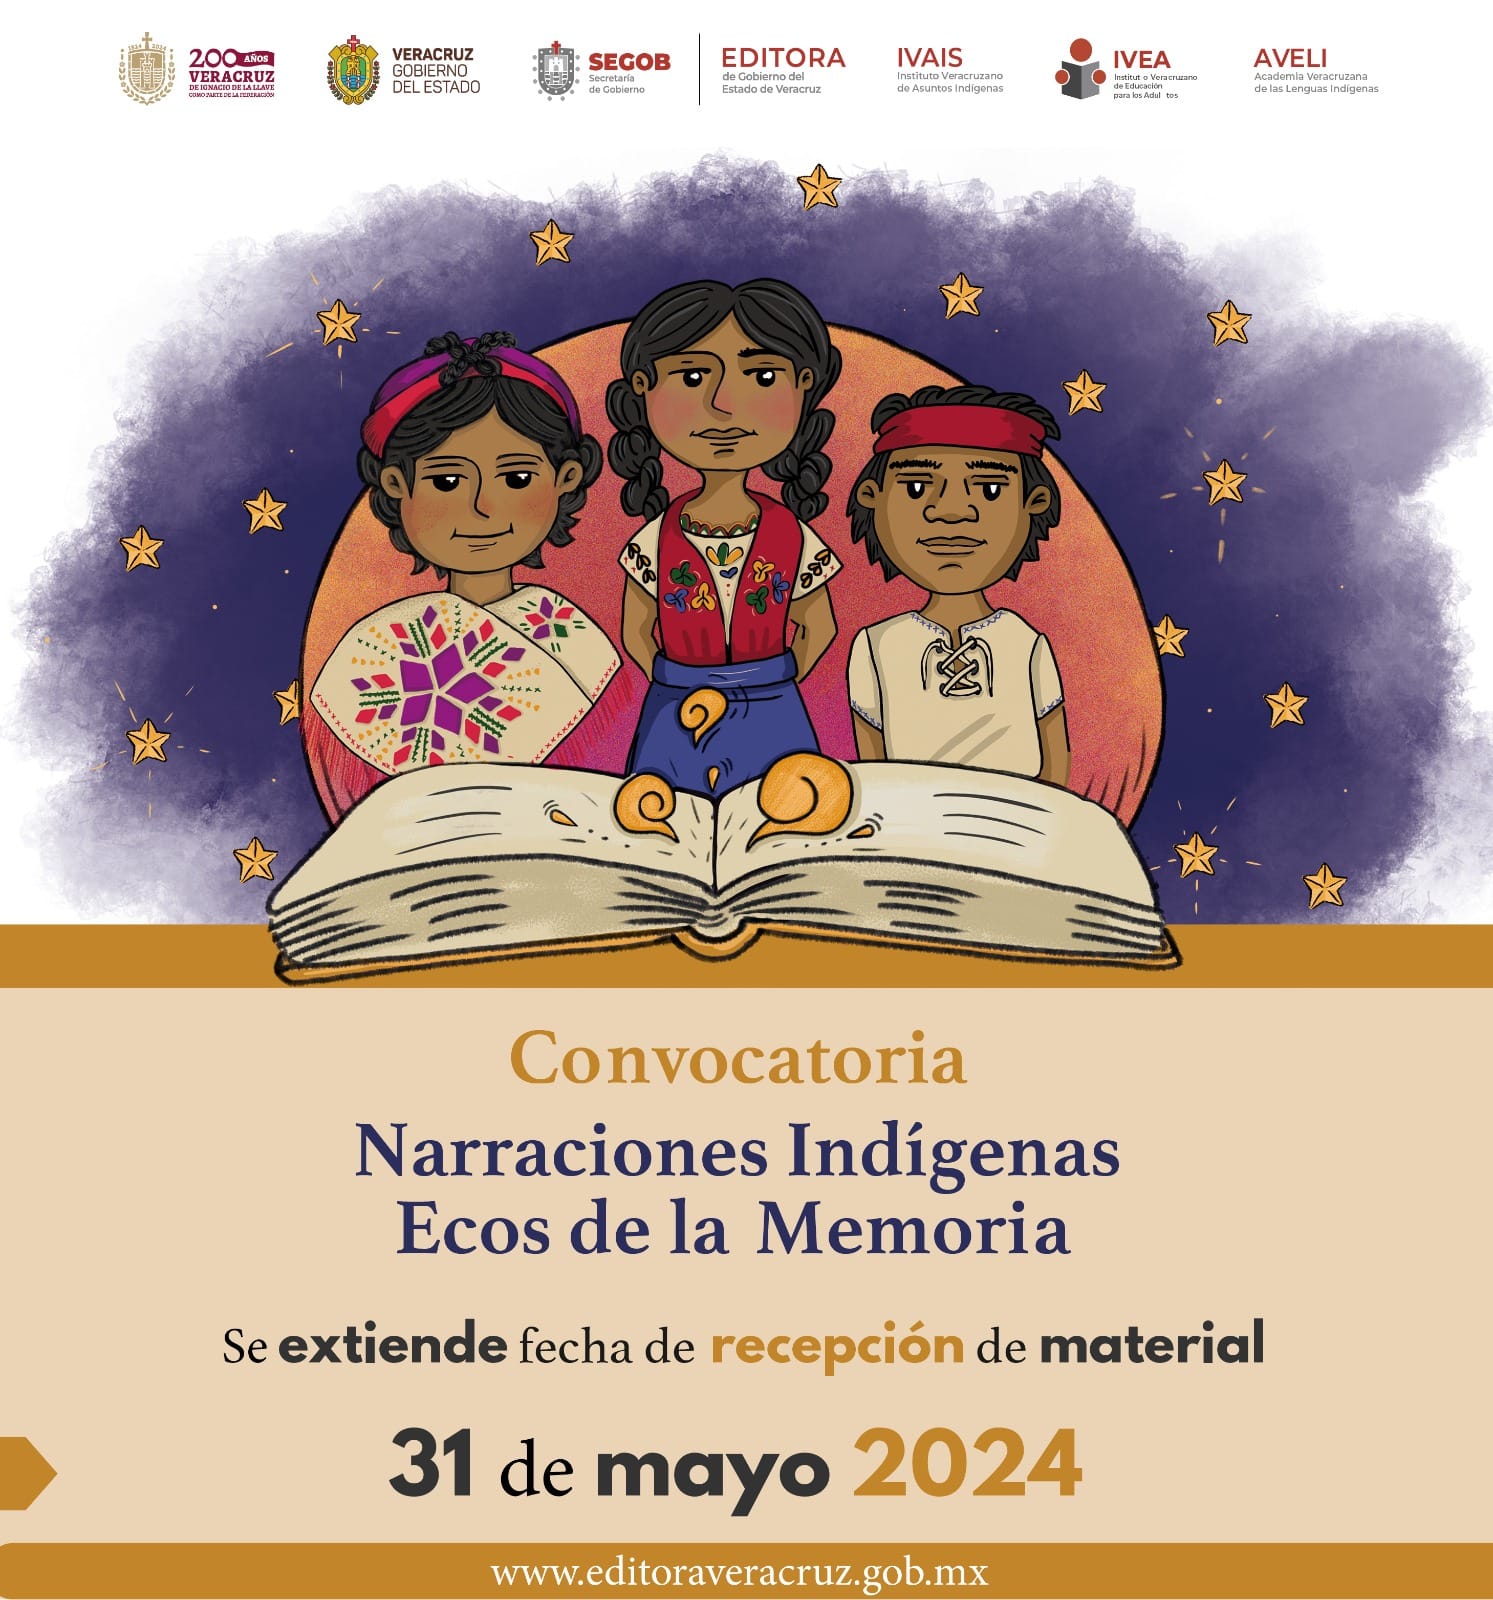 La Academia Veracruzana de las Lenguas Indígenas de a conocer información importante.